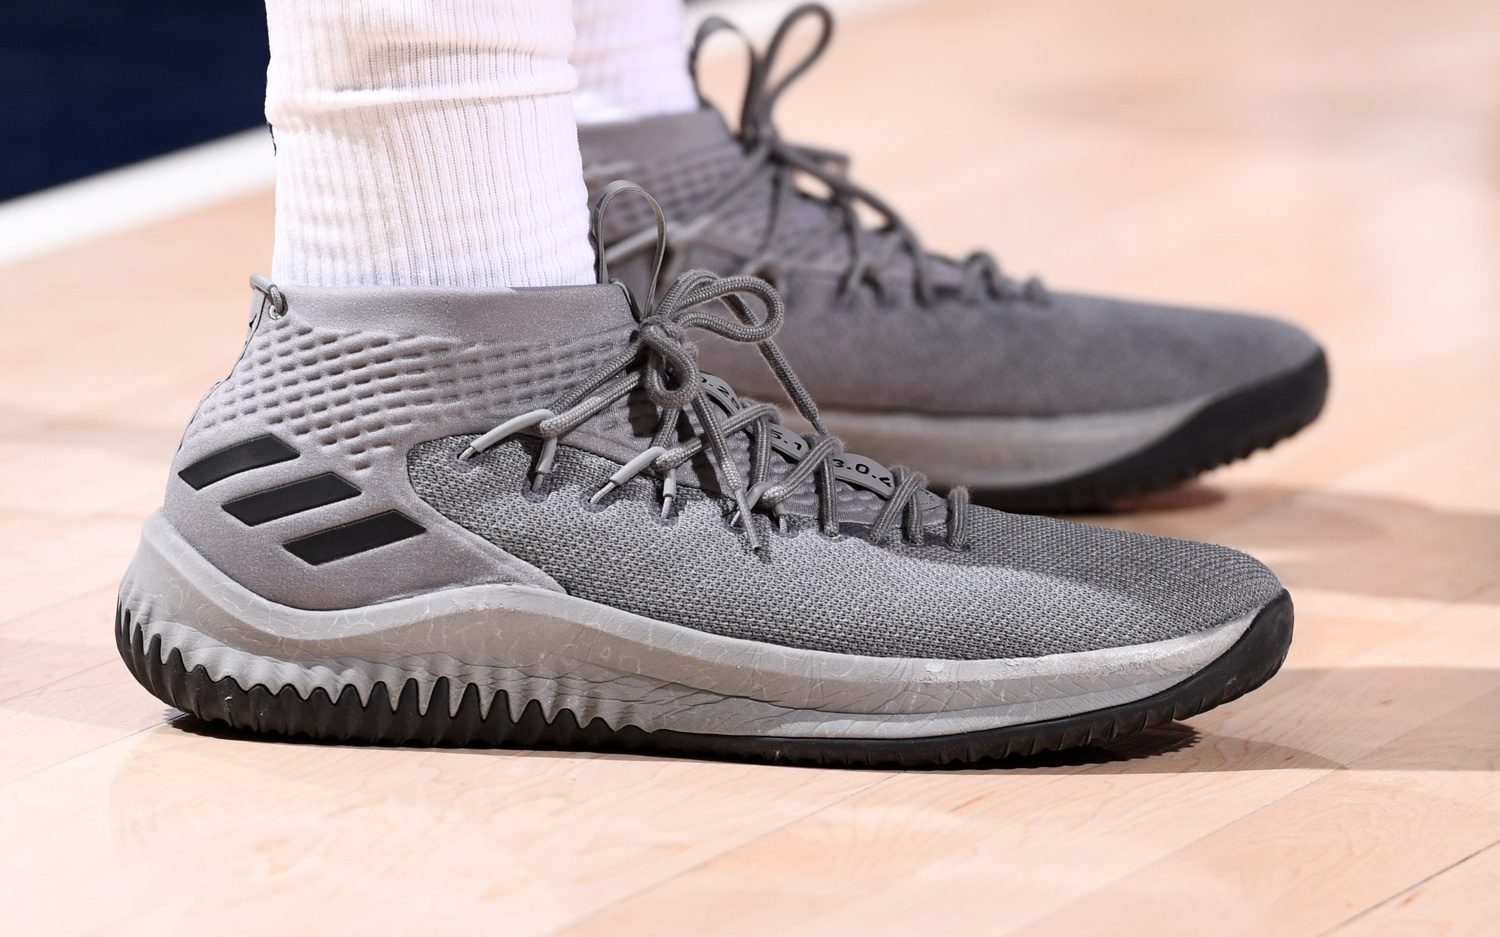 adidas dame 4 basketball shoes